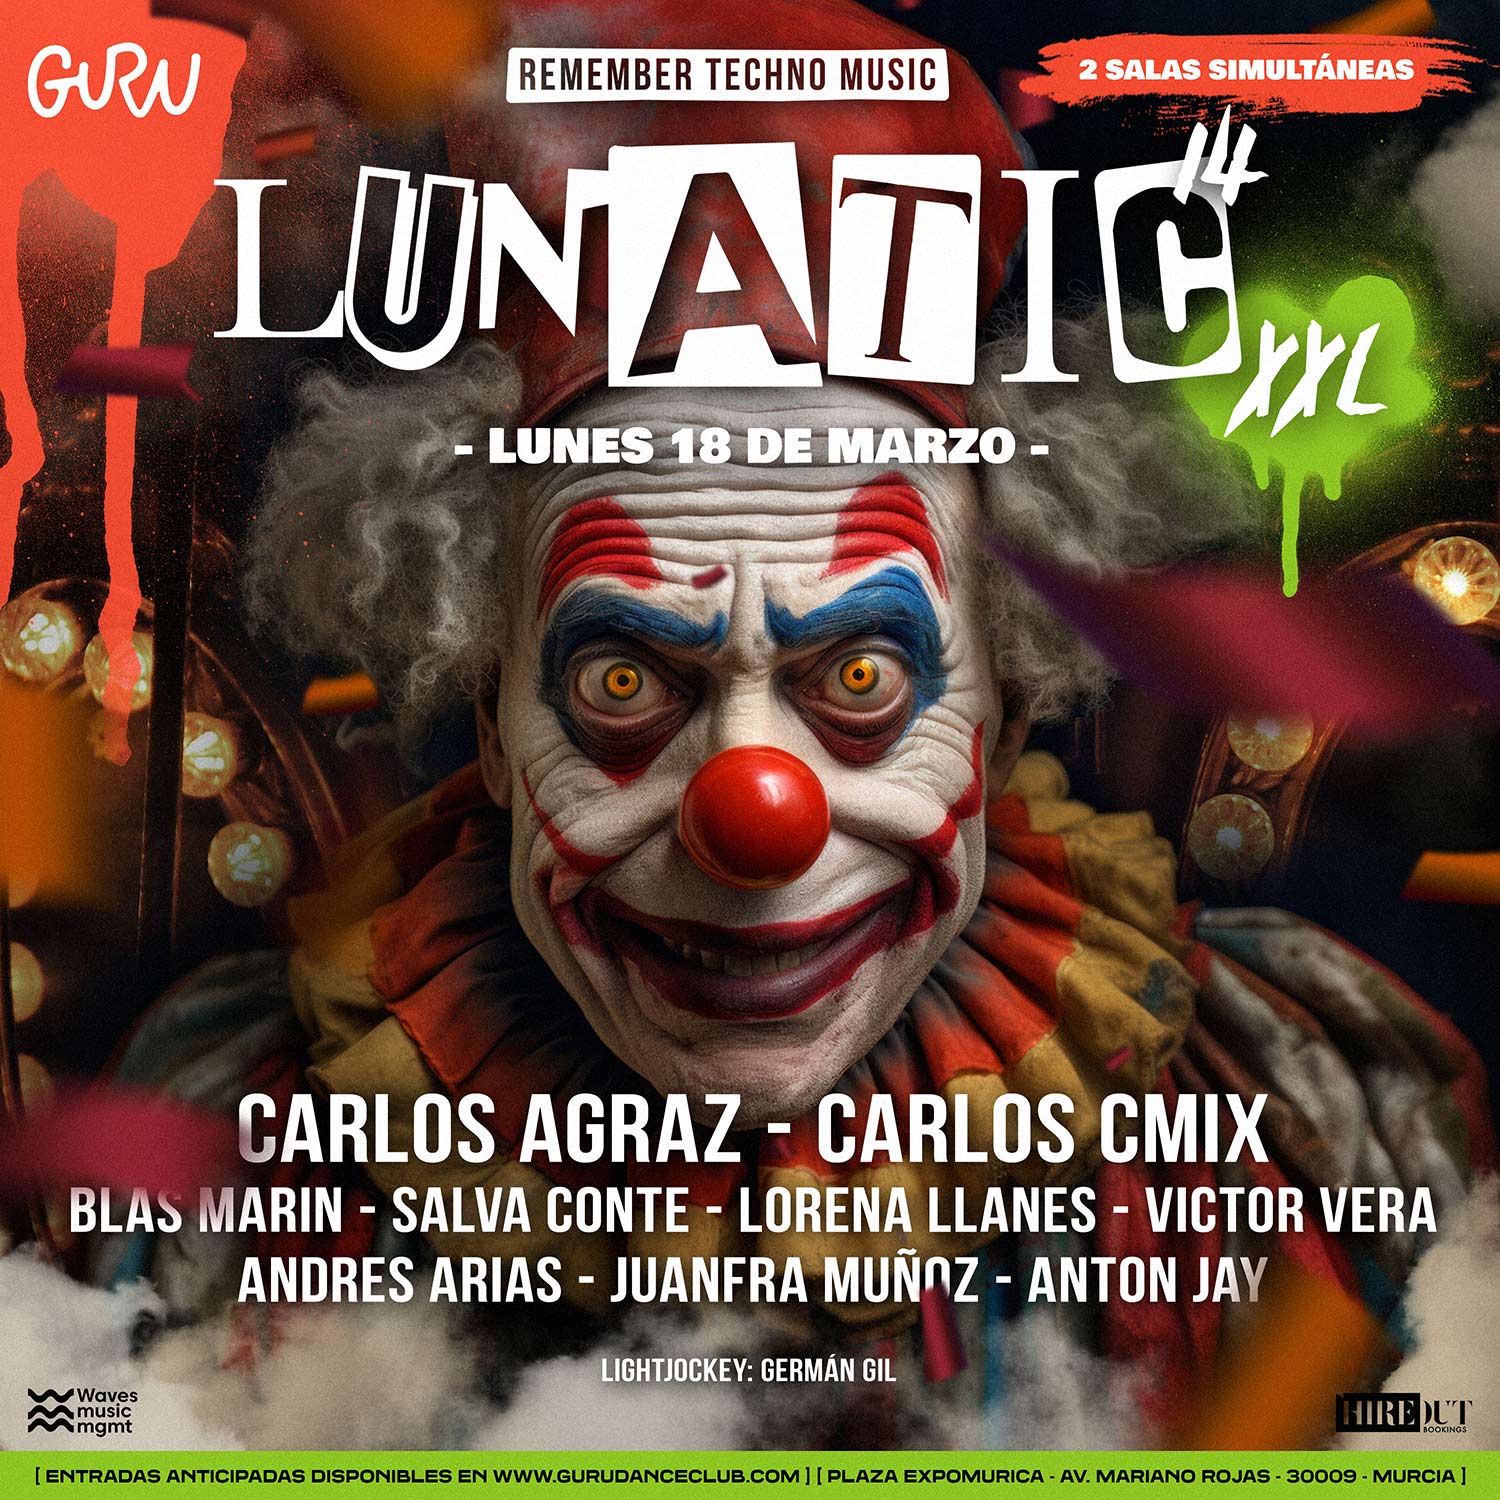 Discoteca Murcia Guru Dance Club - Lunatic 14